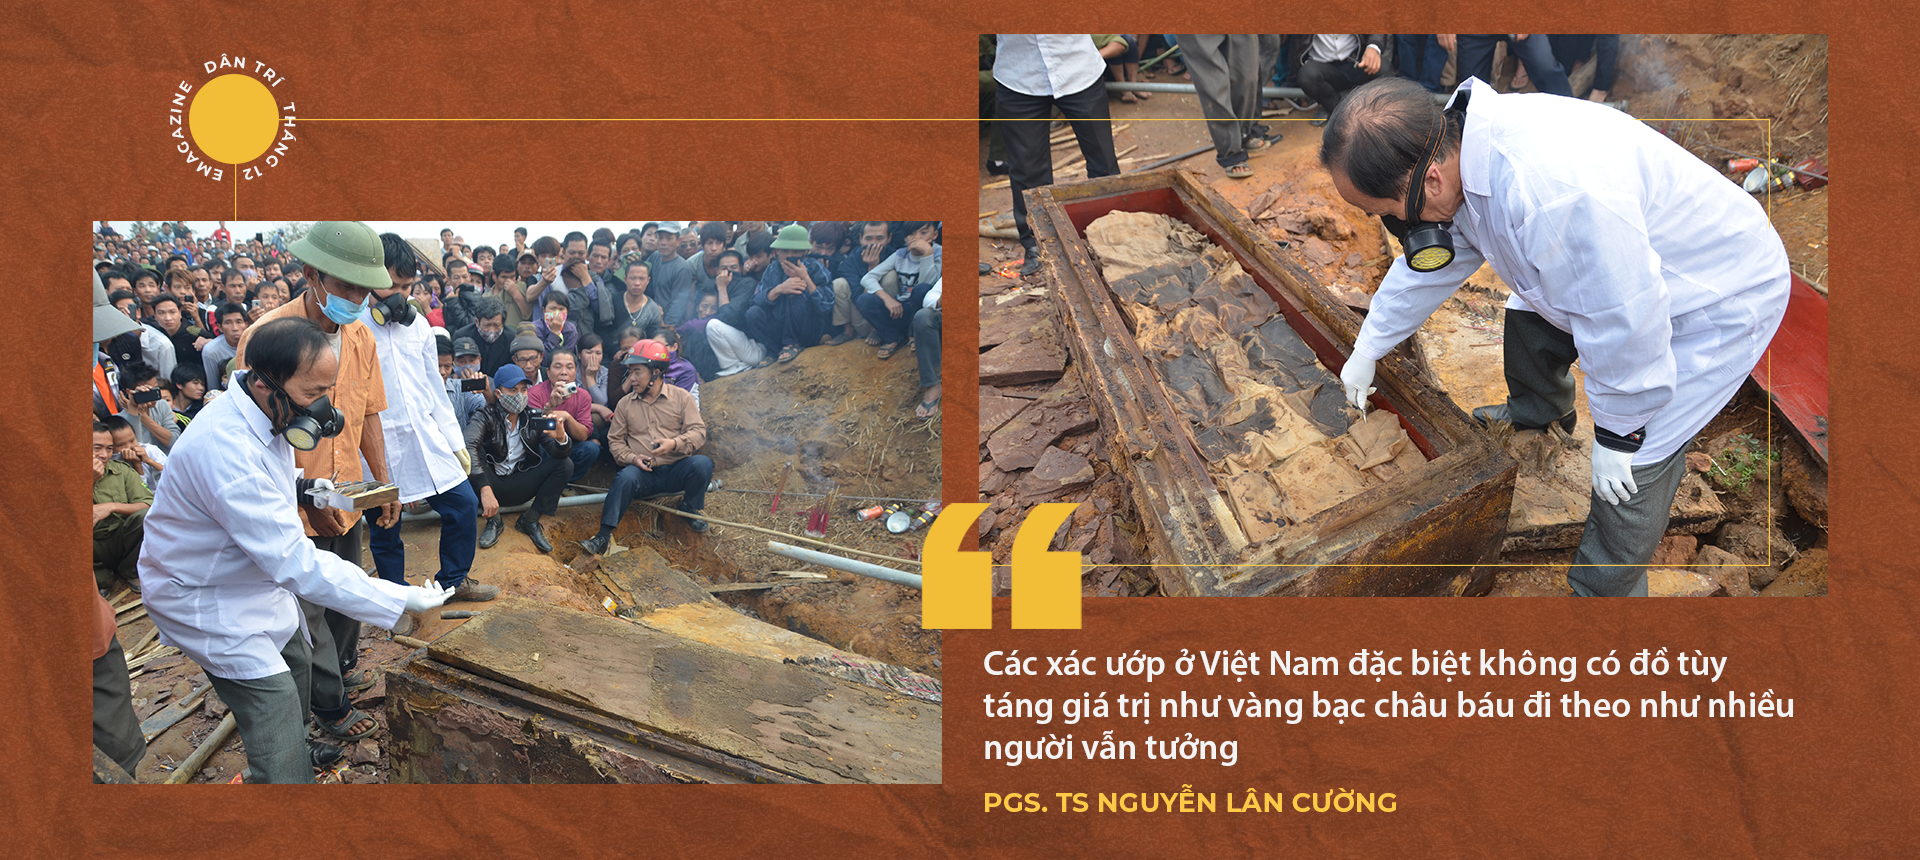 Vén màn bí ẩn những xác ướp Việt: Trăm năm còn nguyên hình hài - 9